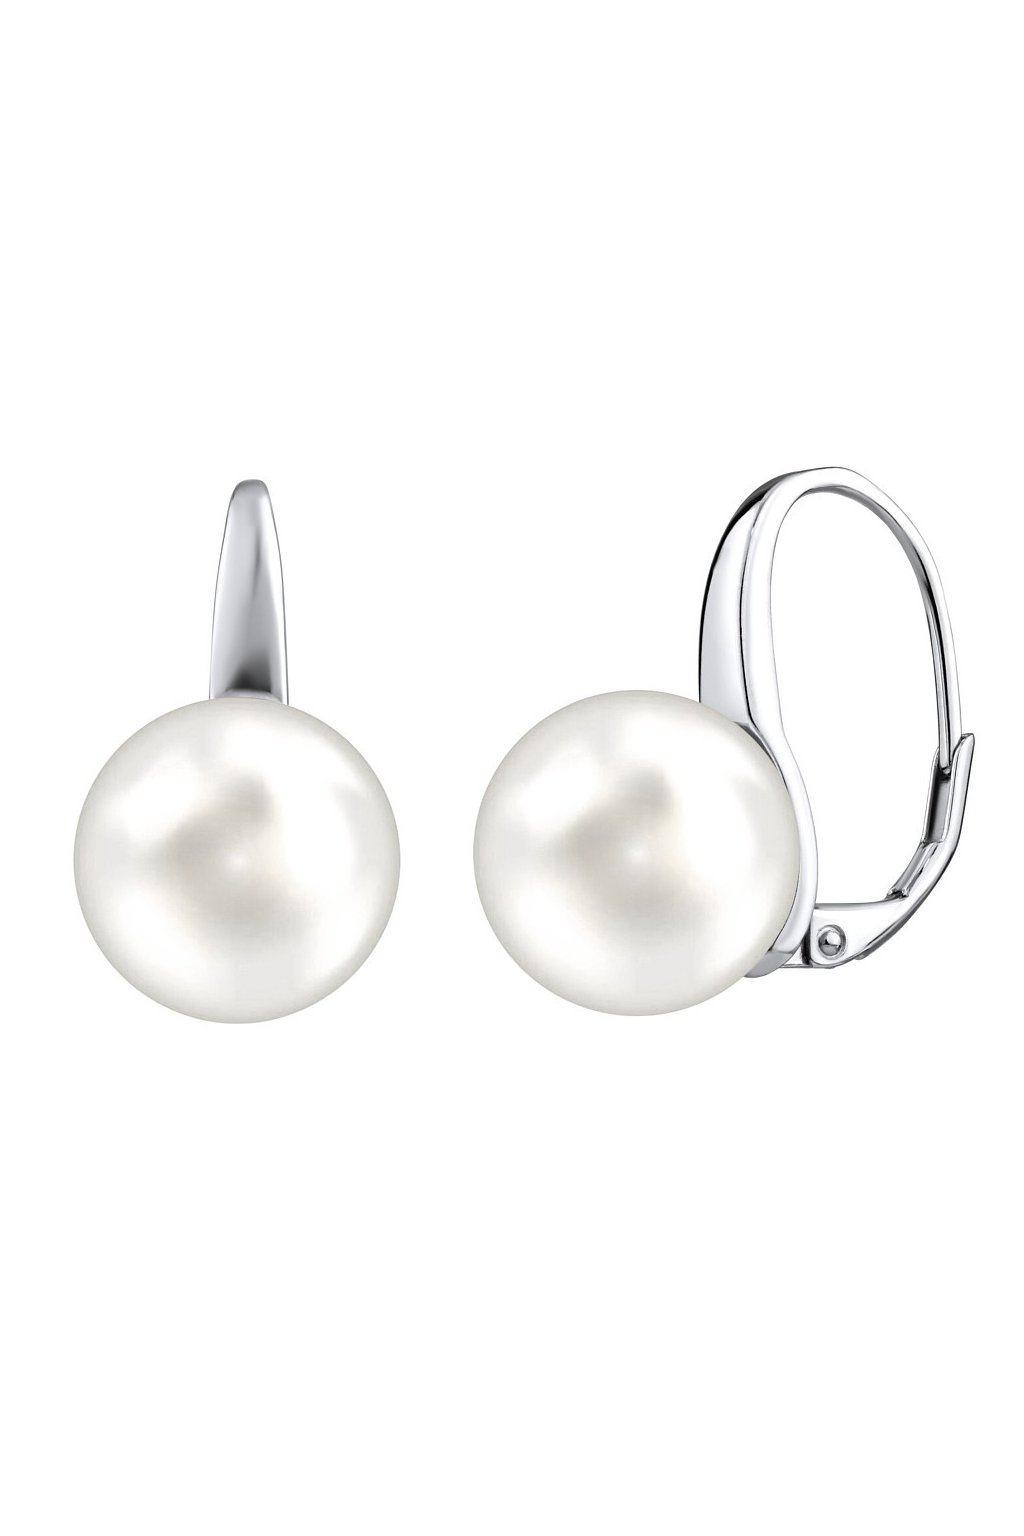 Strieborné náušnice s bielou perlou Swarovski ® Crystals 12 mm